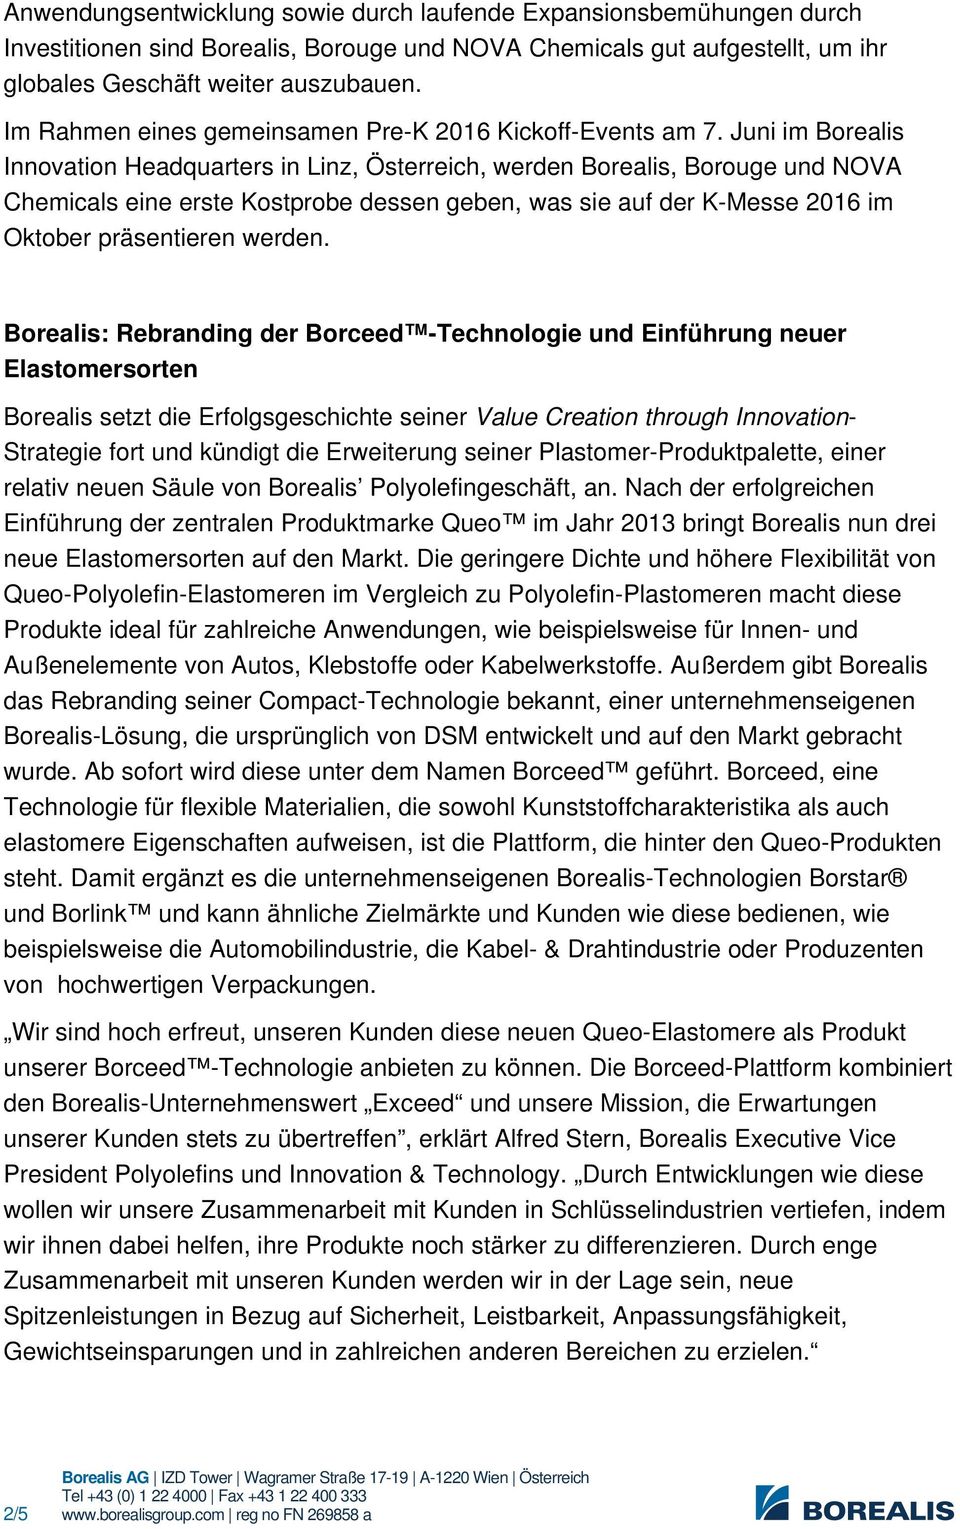 Juni im Borealis Innovation Headquarters in Linz, Österreich, werden Borealis, Borouge und NOVA Chemicals eine erste Kostprobe dessen geben, was sie auf der K-Messe 2016 im Oktober präsentieren